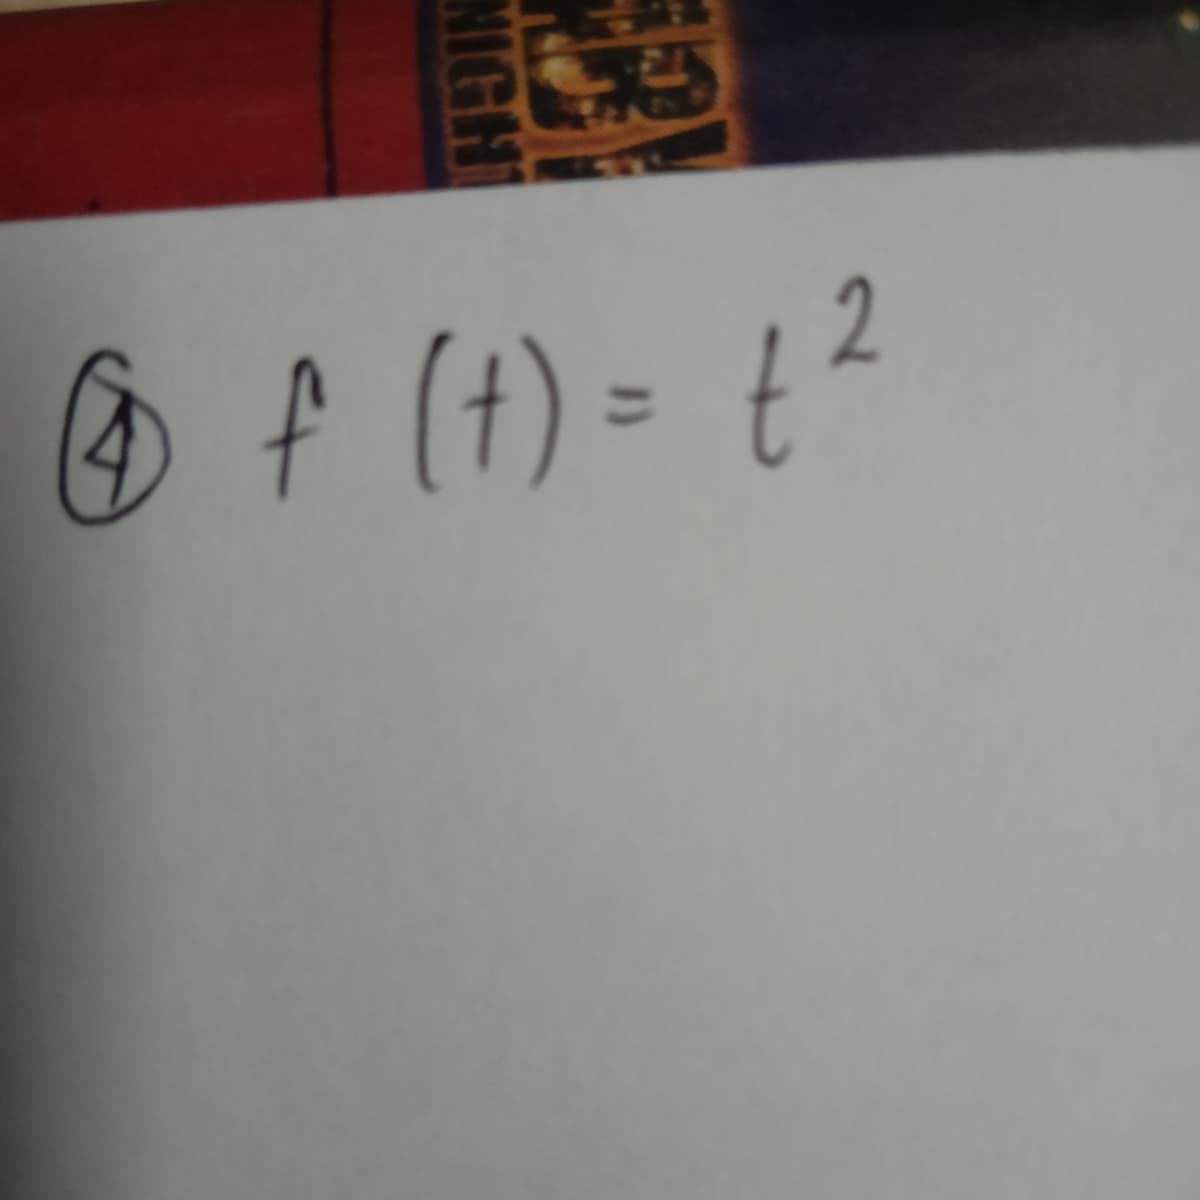 O f (4) =
2.
(+)
MIGHT
